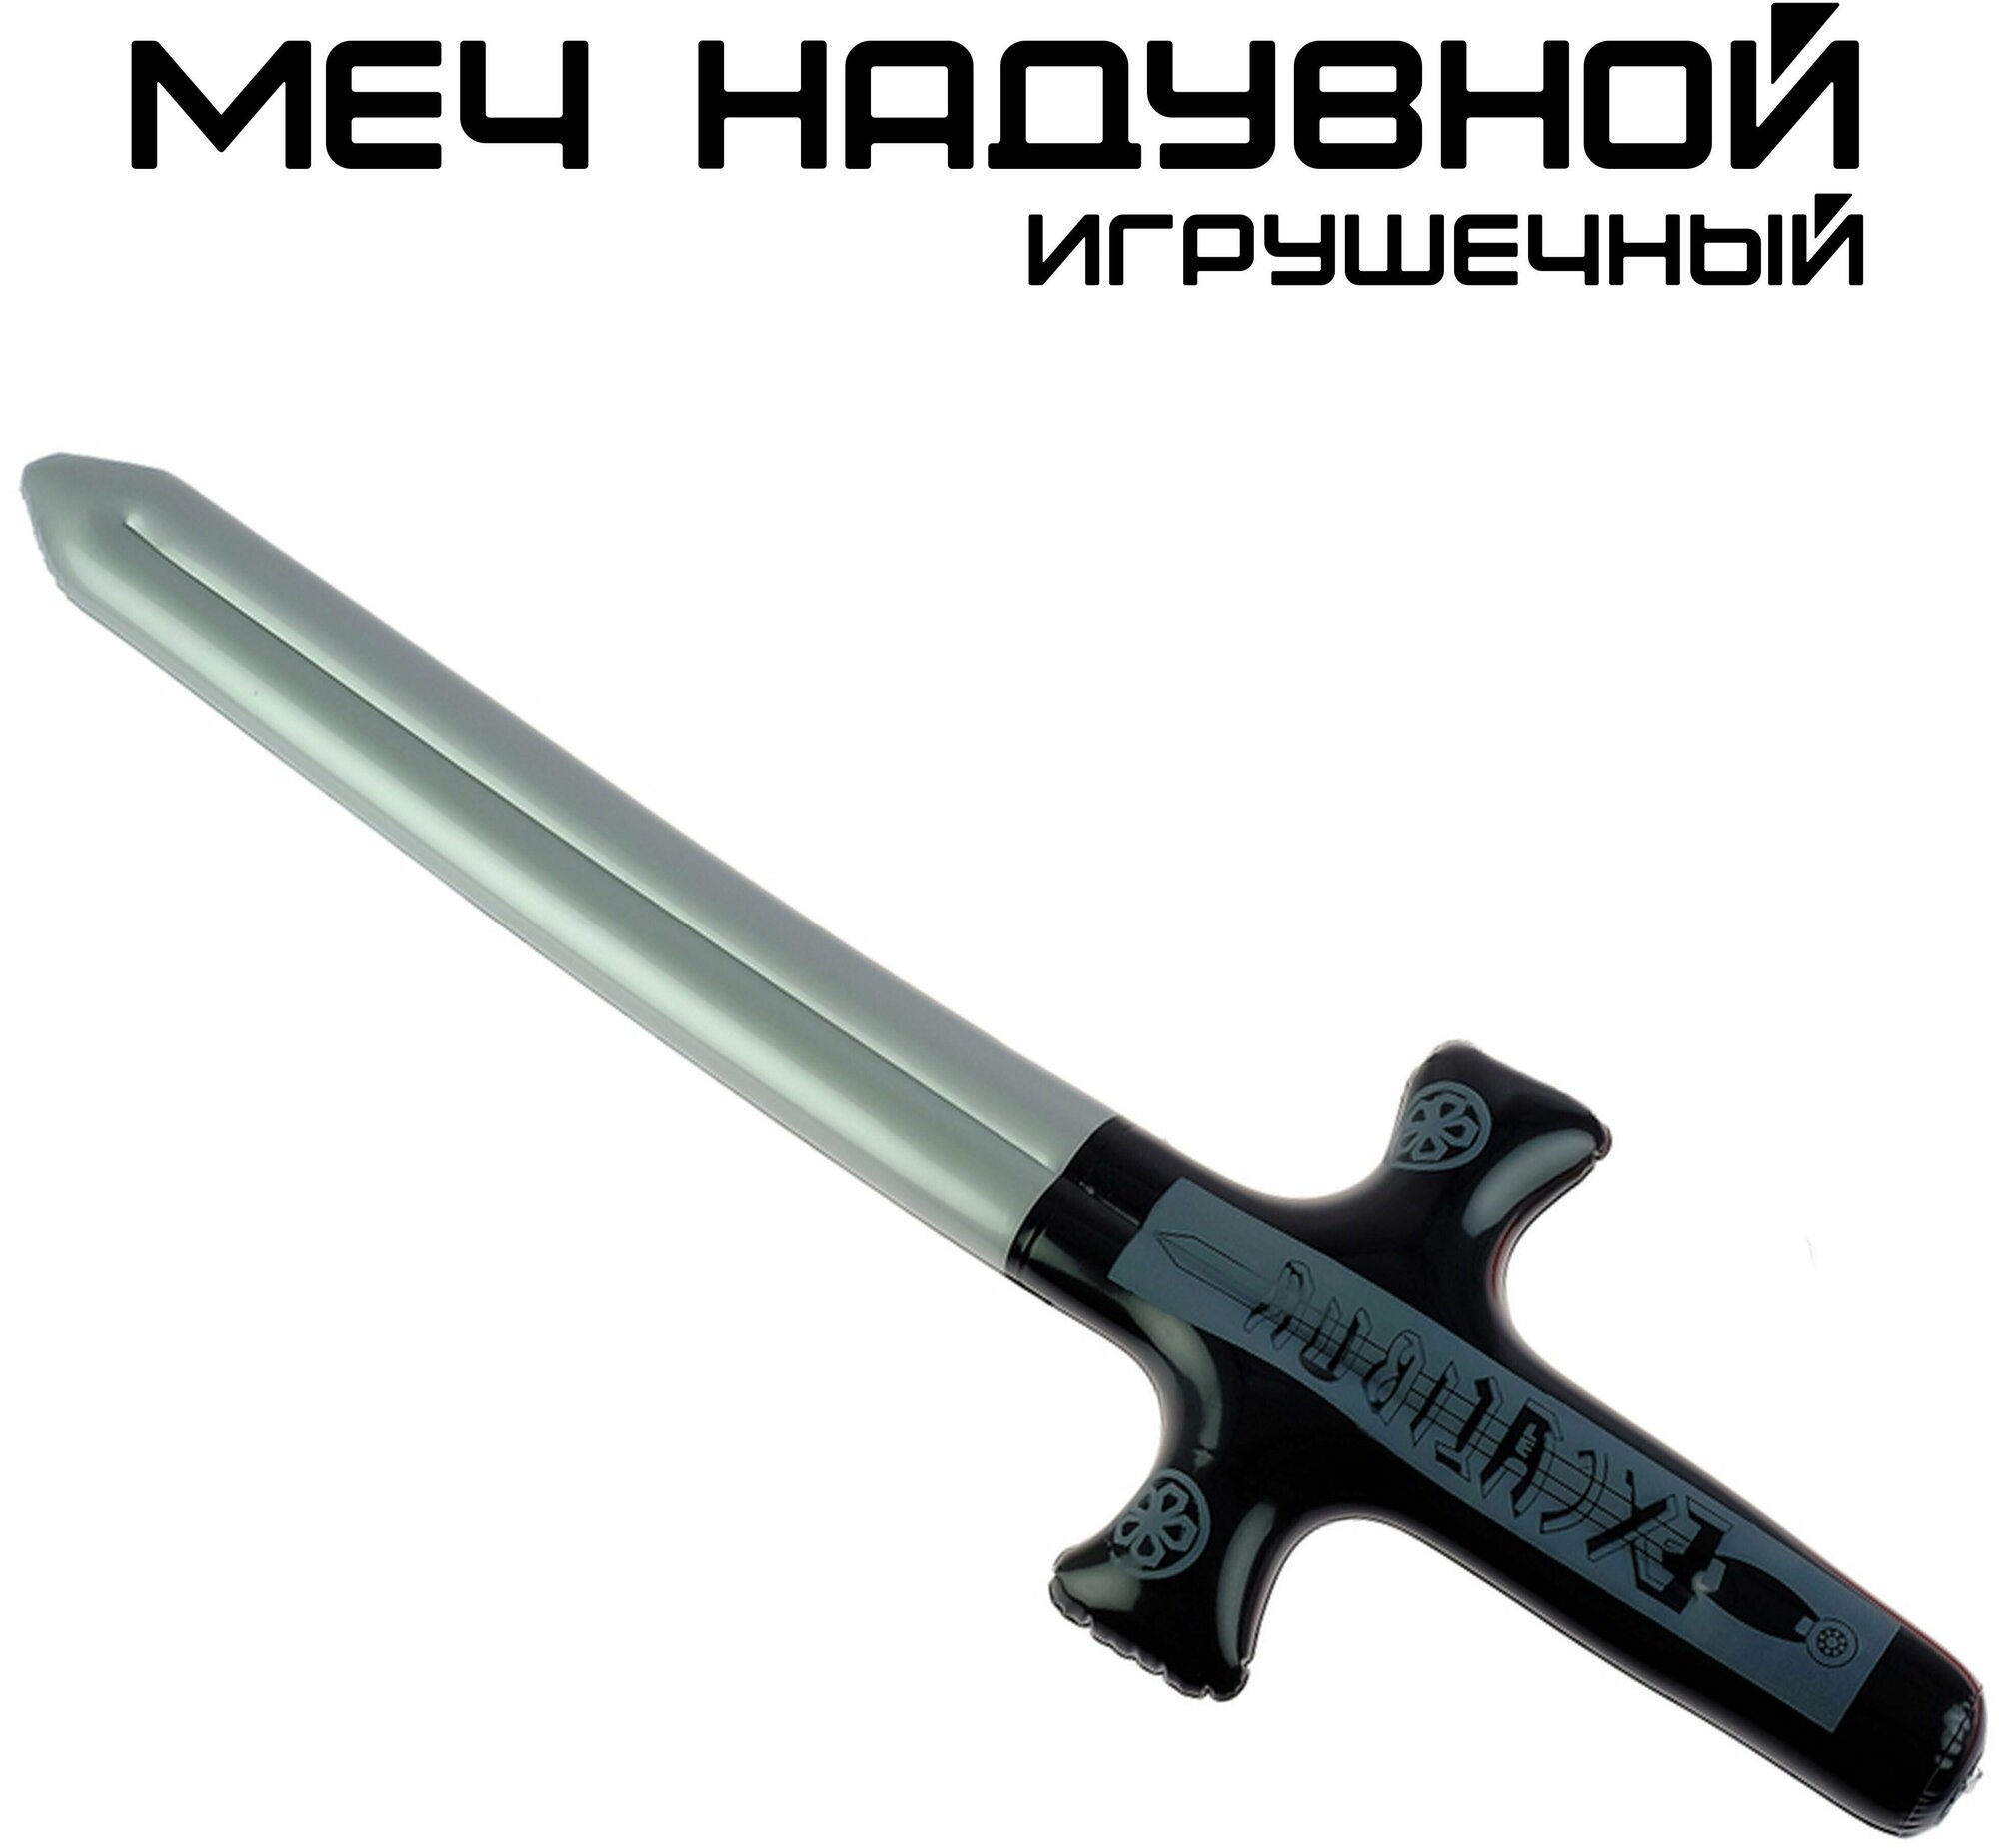 Надувной меч Экскалибур/ Надувная игрушка меч